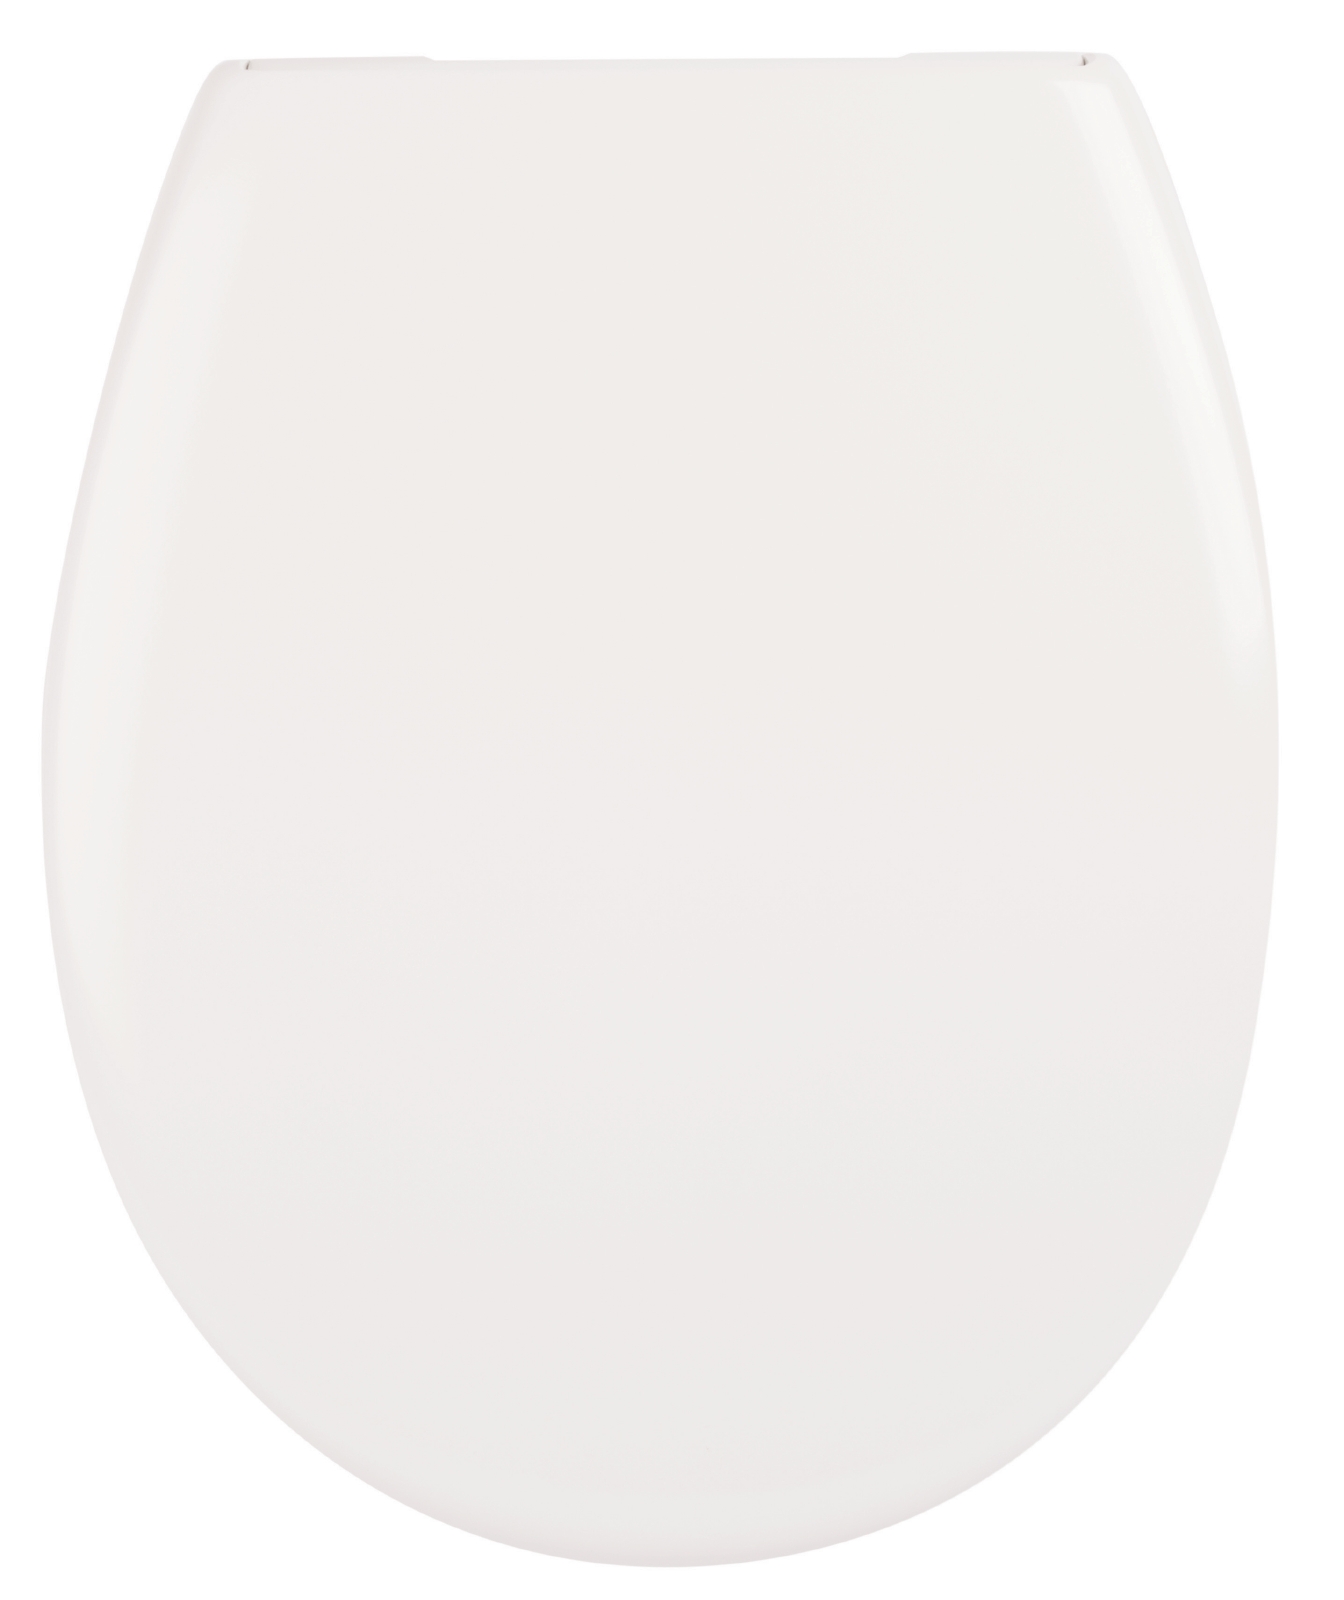 'aquaSu® WC-Sitz Madrid mit Absenkautomatik und Fast-Fix, abnehmbar aus Duroplast in Weiß